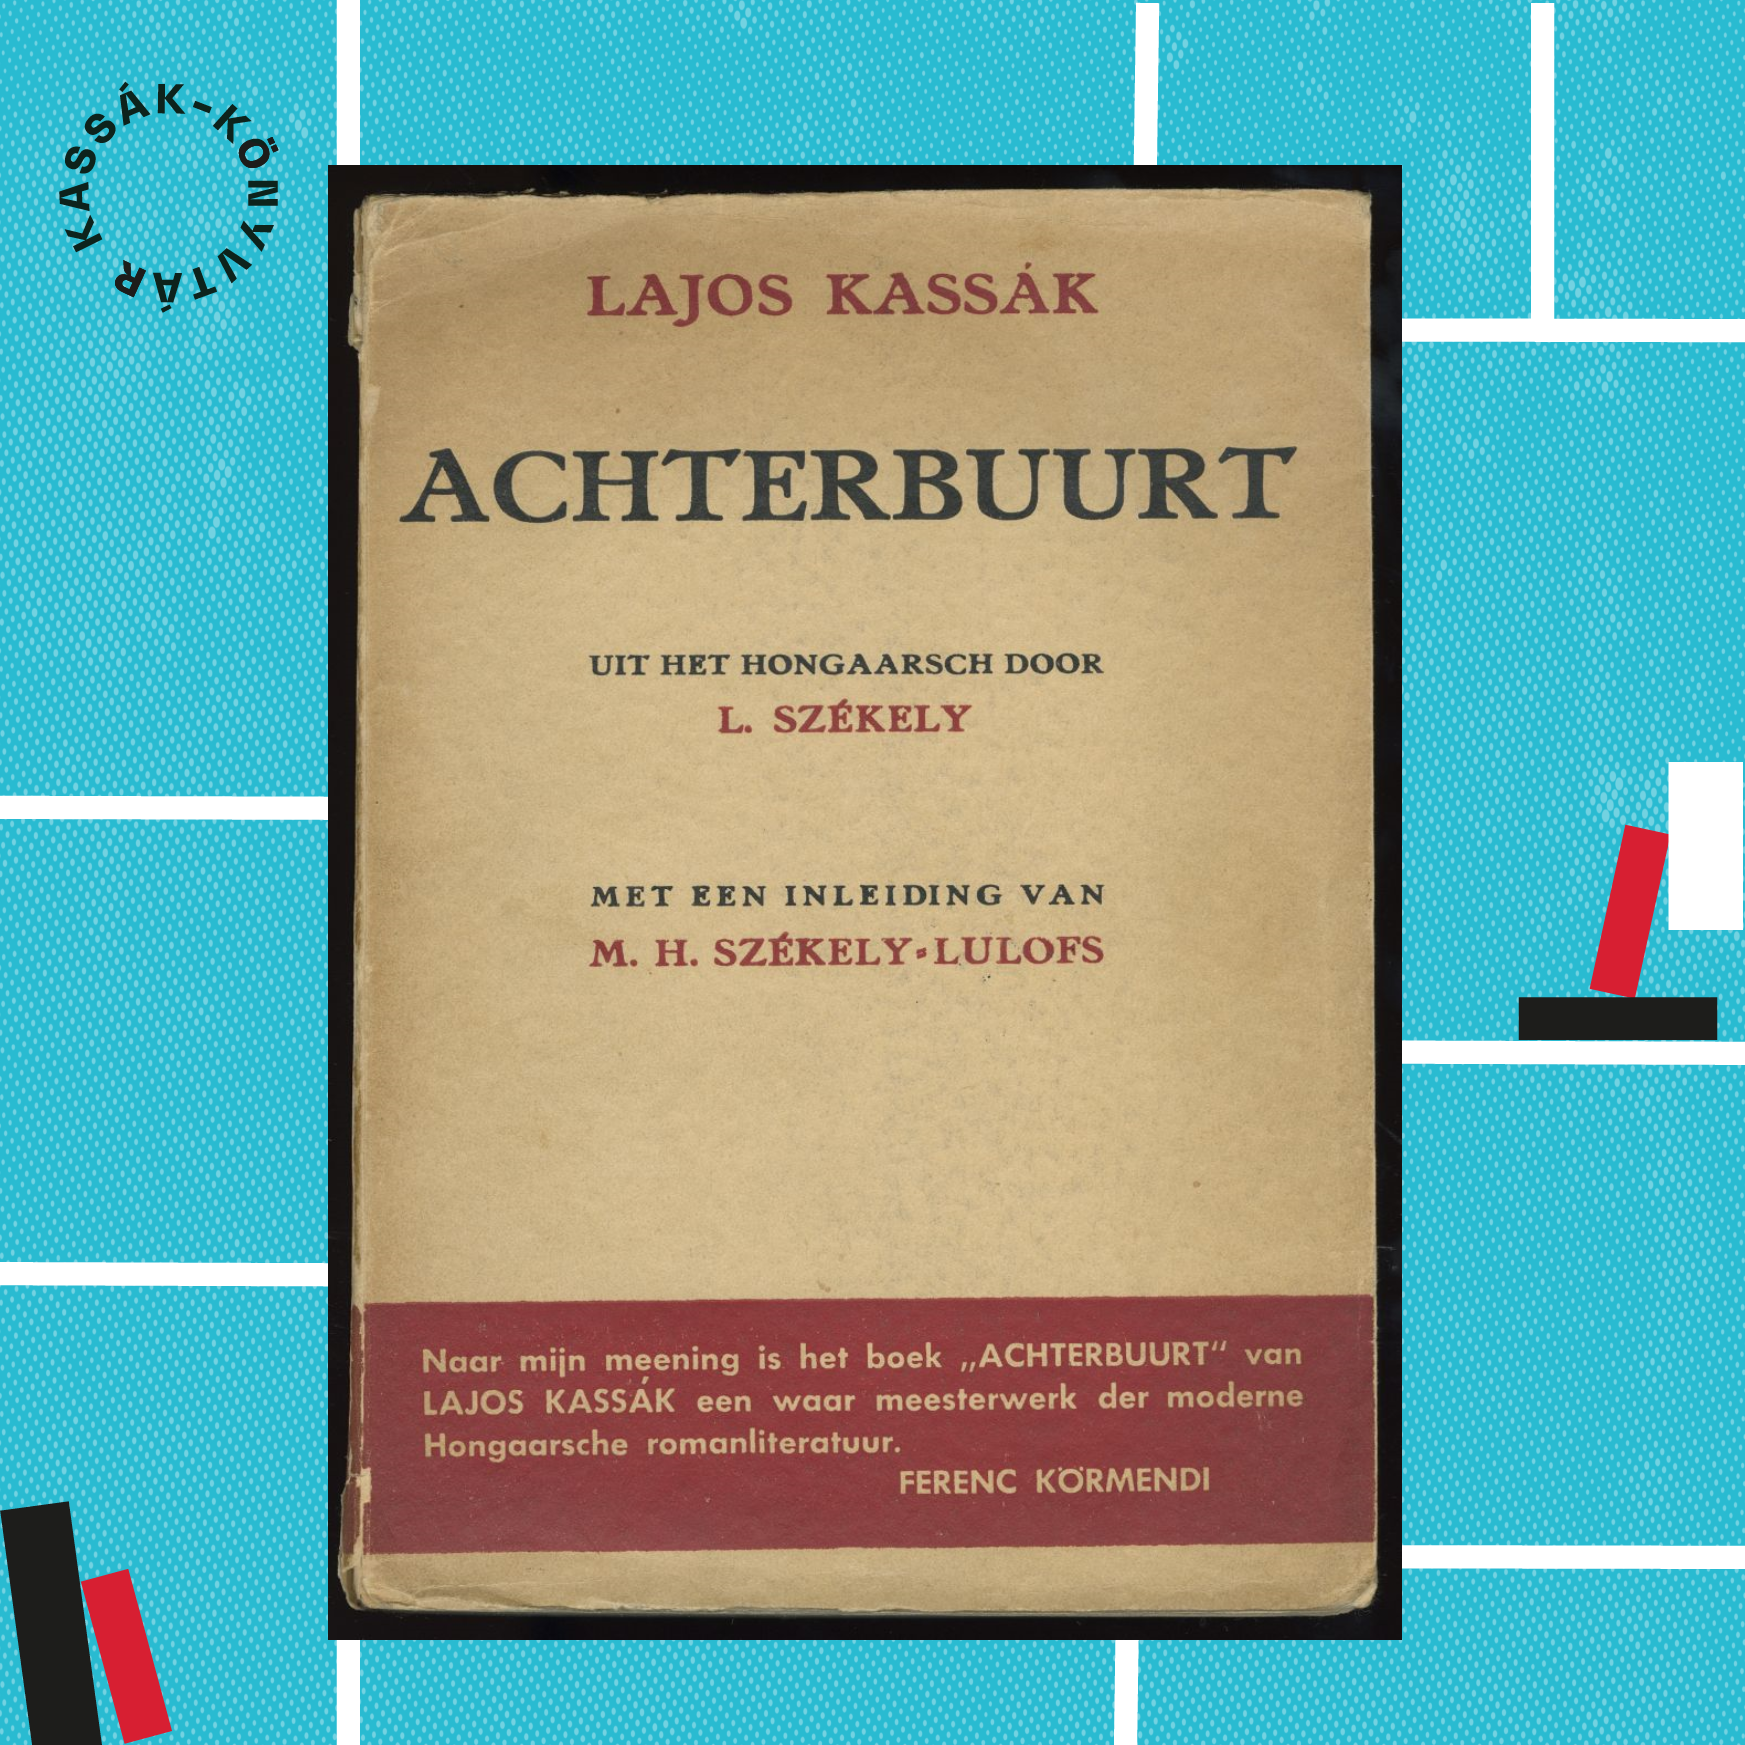 Az Achterbuurt címen megjelent Székely fordítás hátsó borító